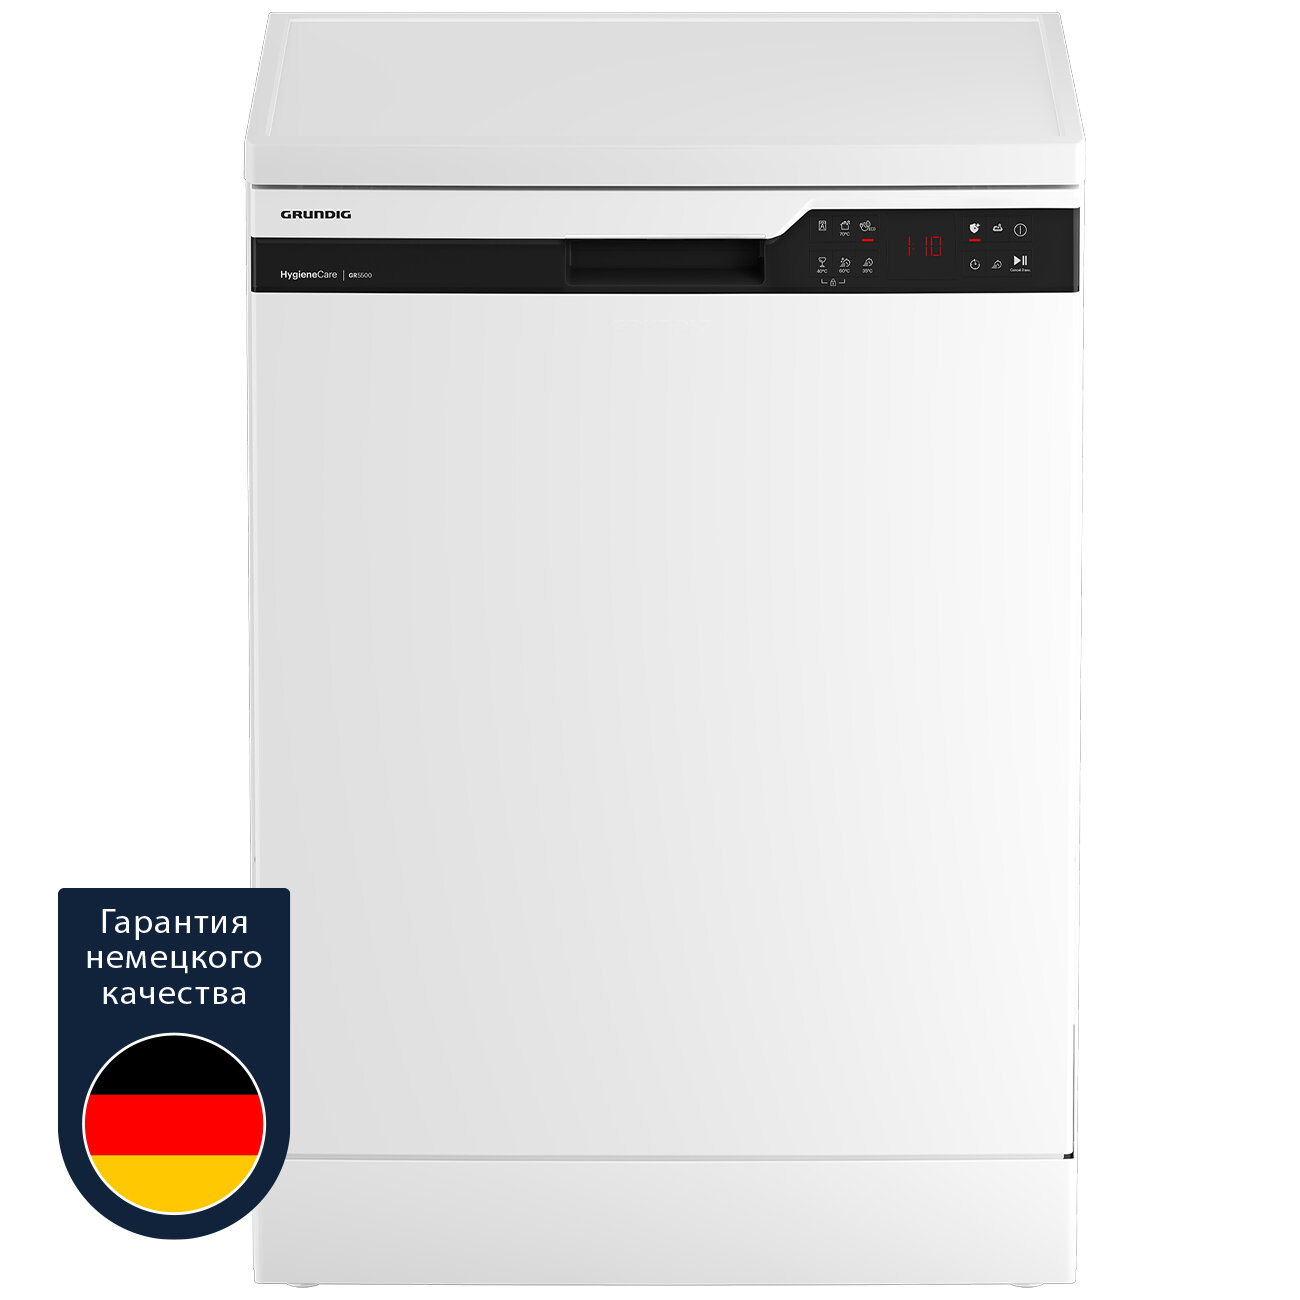 Посудомоечная машина Grundig GNFP3551W, 60 см, белый